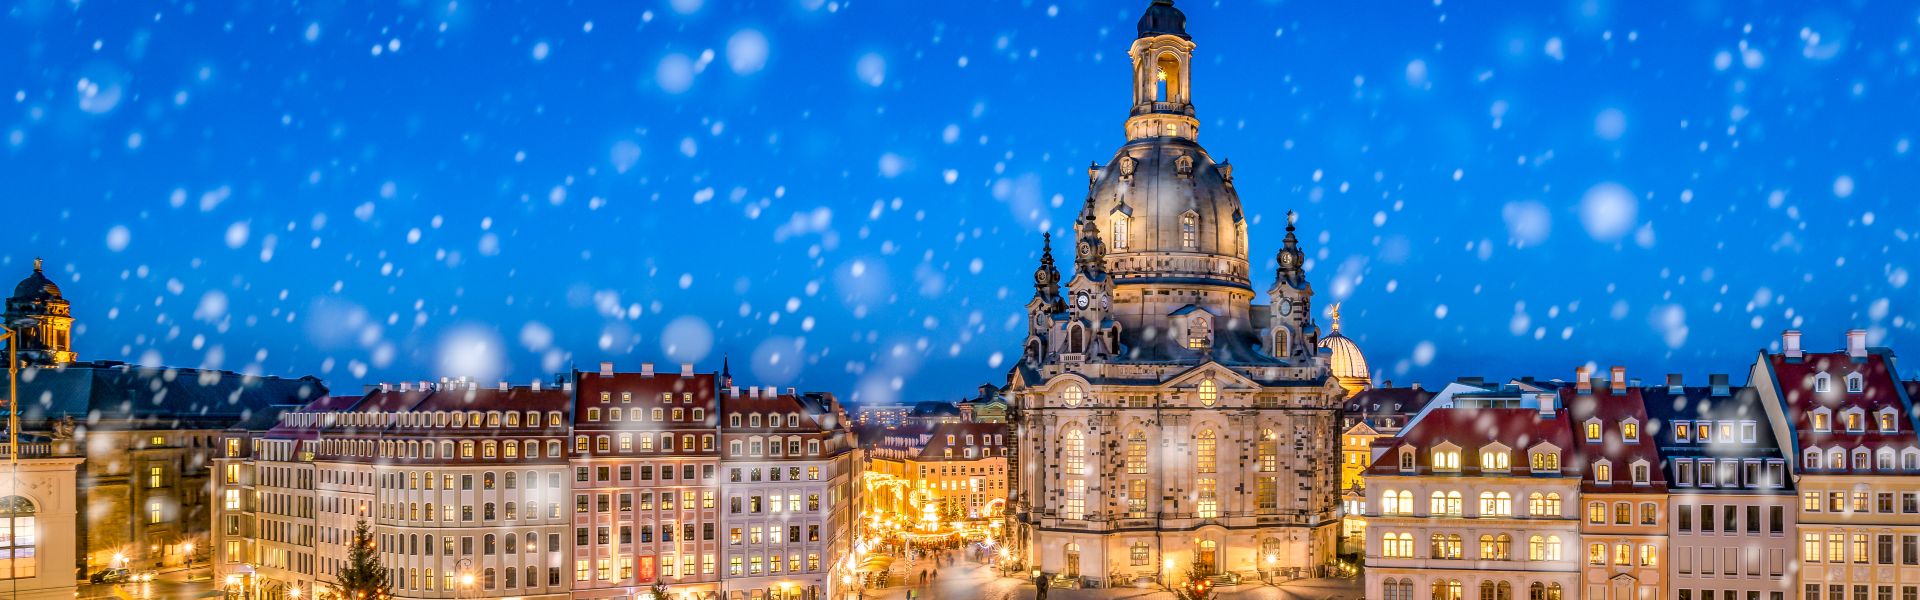 Dresden Winterreise Weihnachtsmarkt